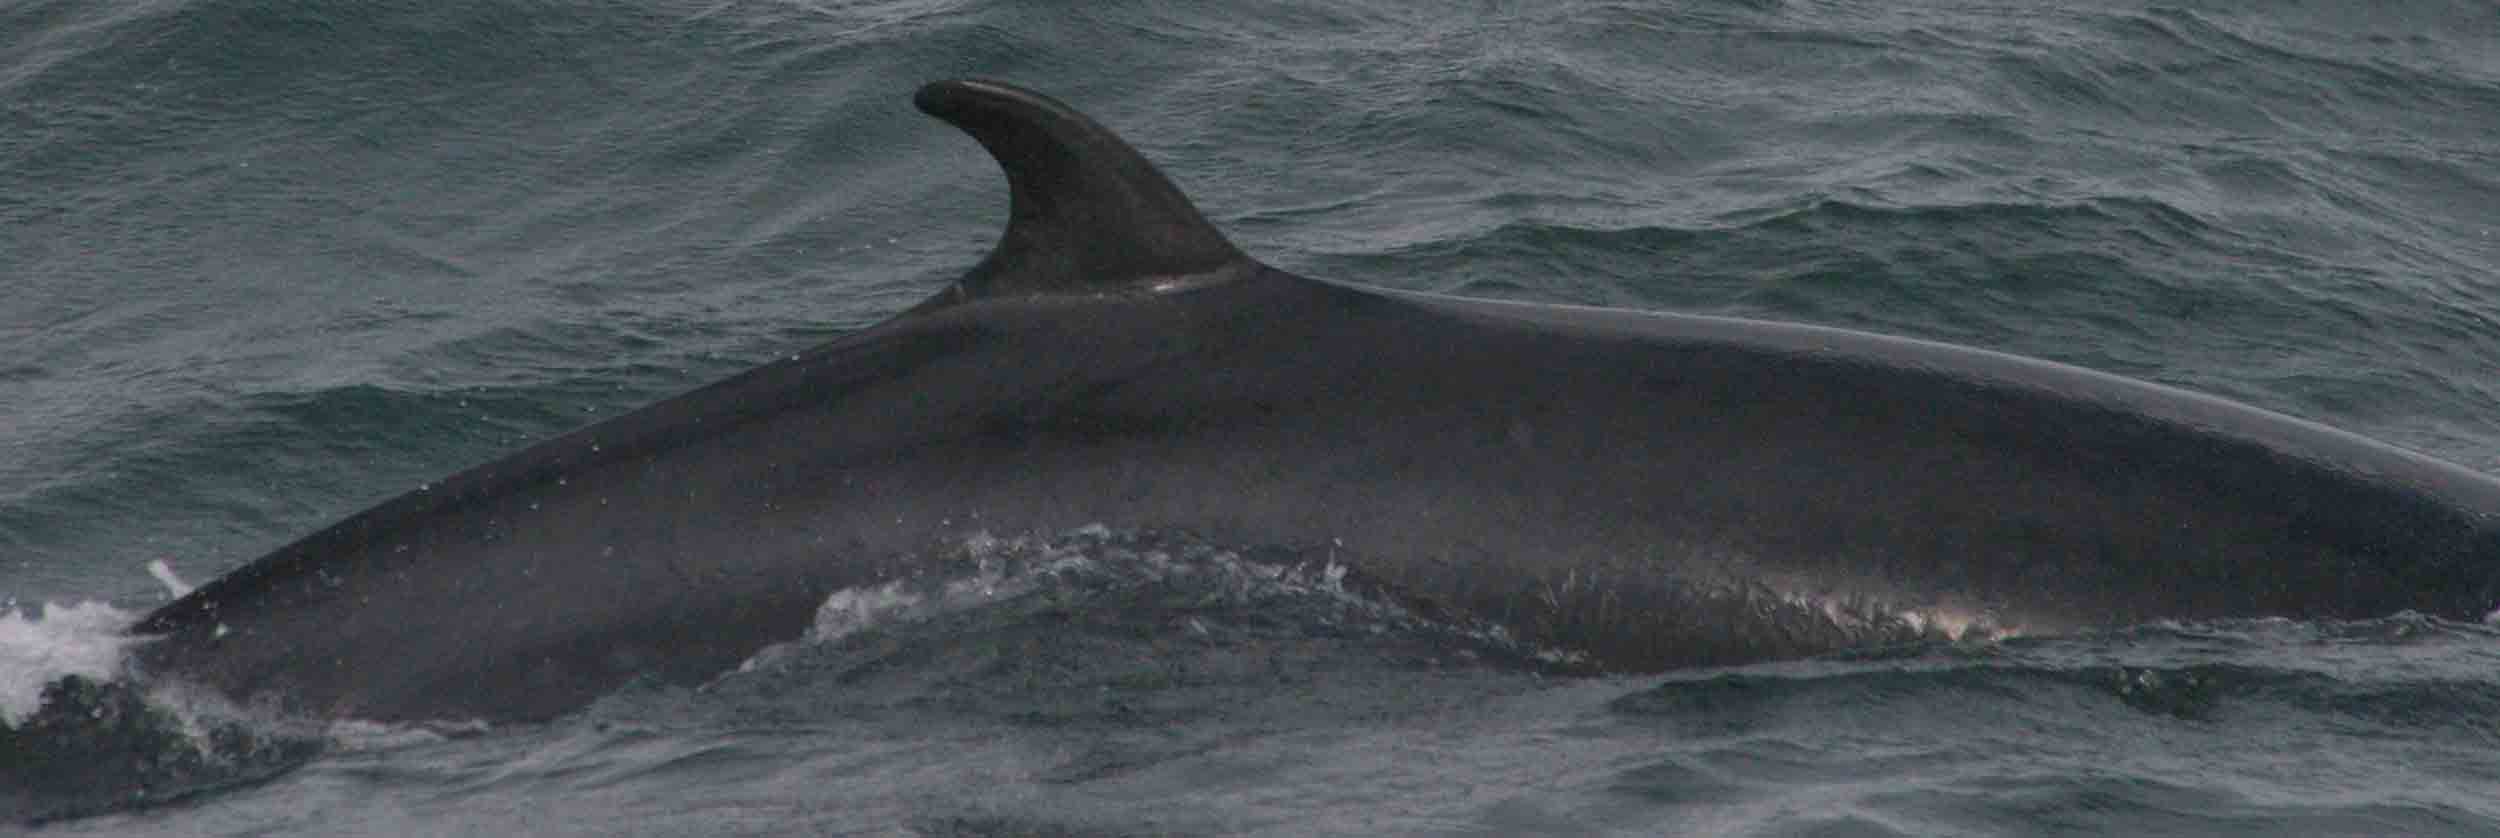 Les pêcheurs japonais de retour à terre avec 177 baleines